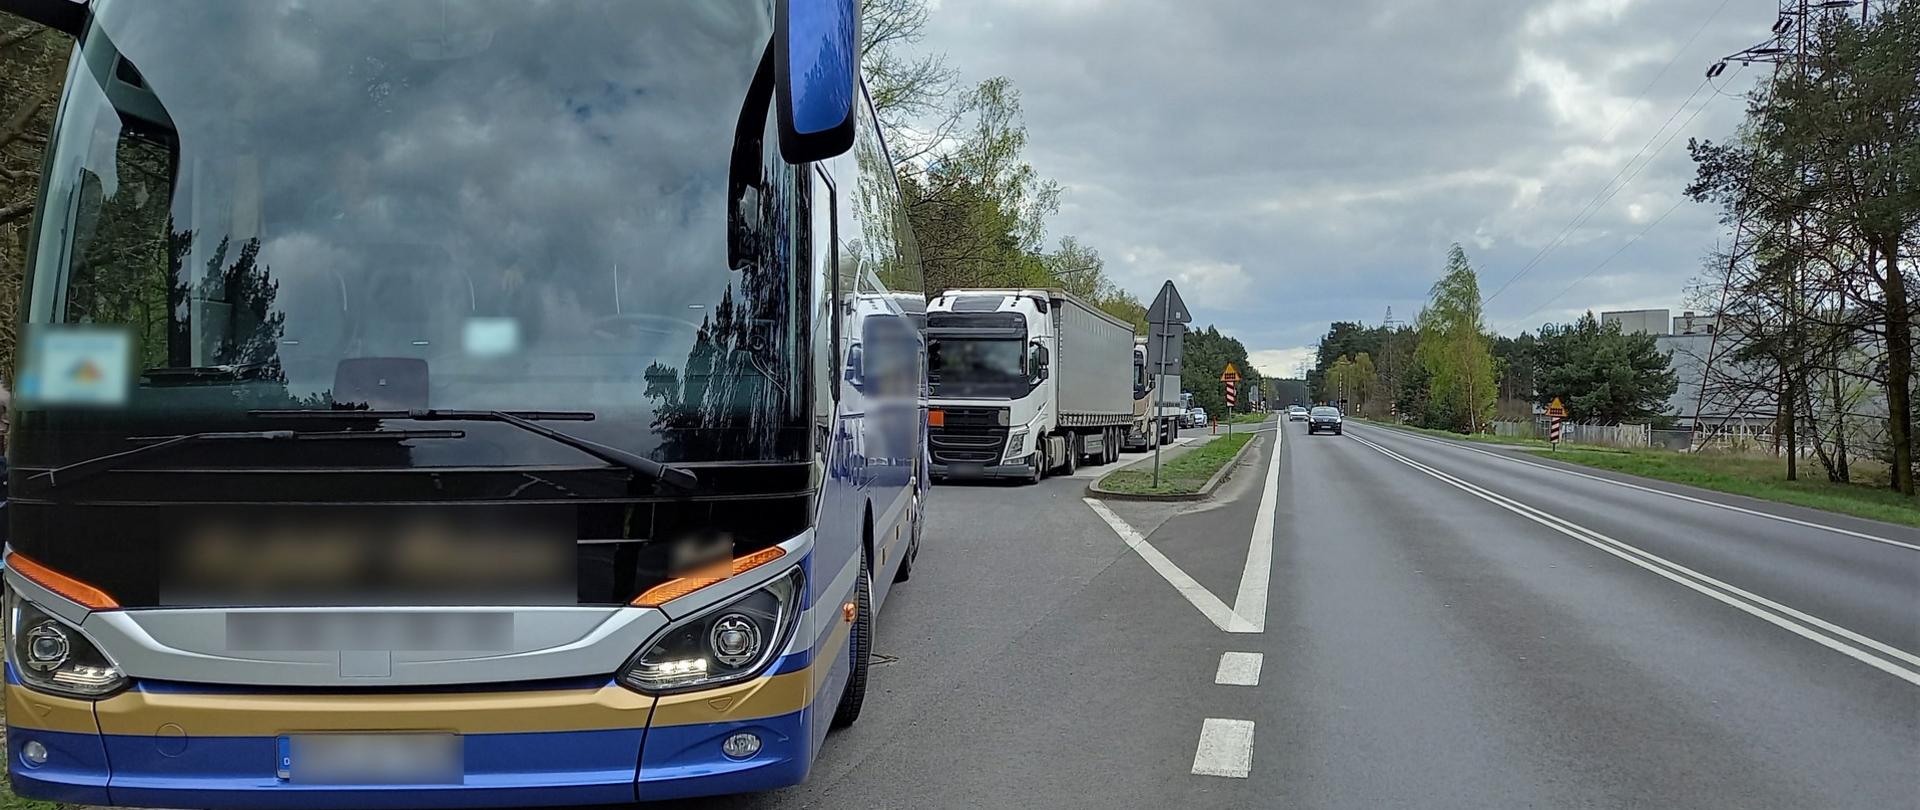 Zatrzymany przez patrol pilskiej inspekcji kierowca niemieckiego autobusu z pasażerami na pokładzie nie miał wypełnionych dokumentów przewozowych